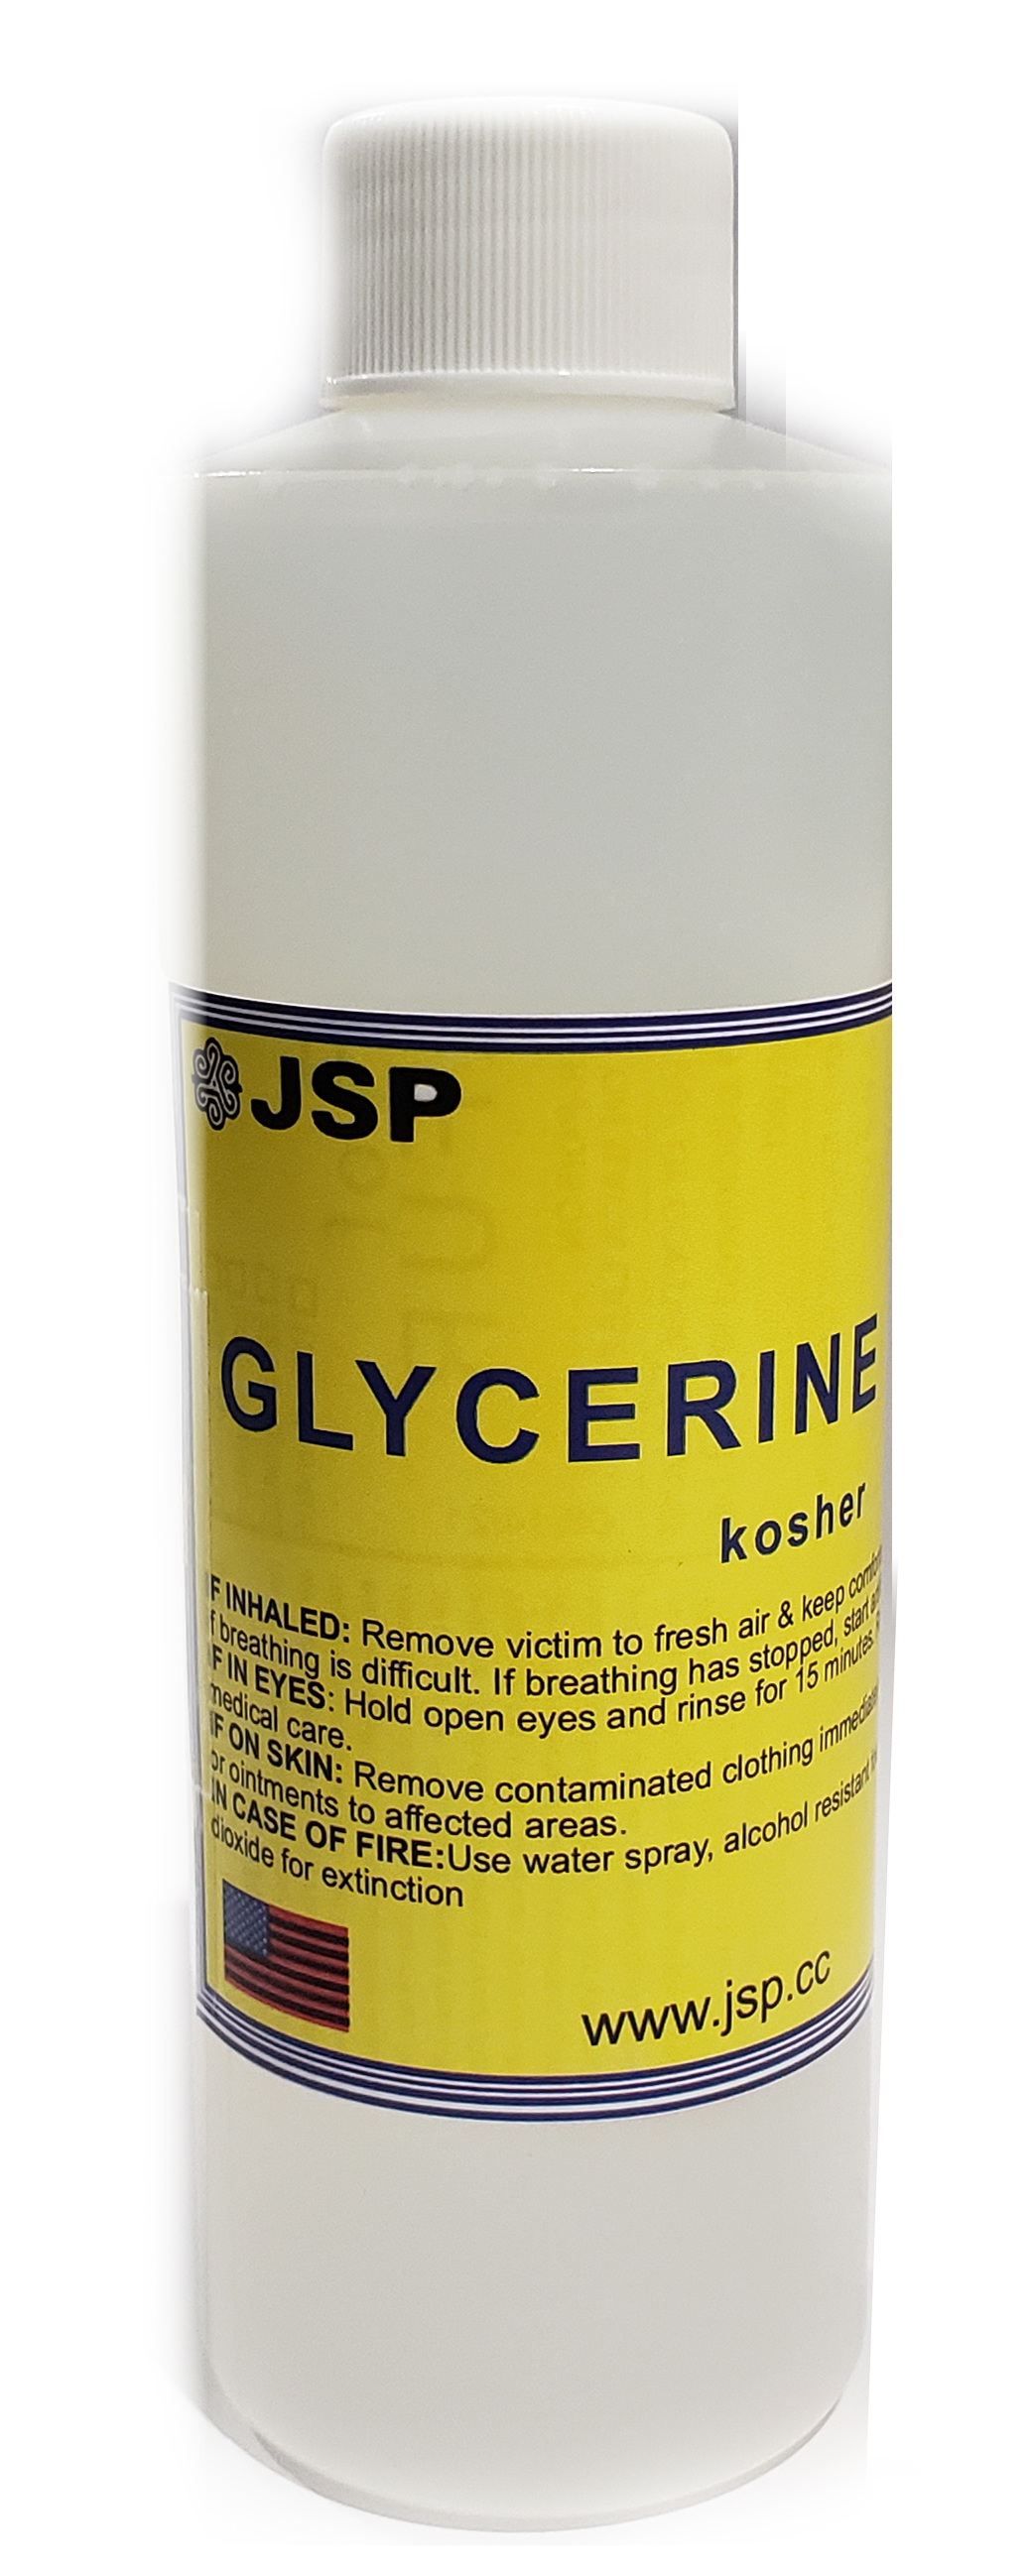 GLYCERINE/GLYCEROL 99.7% 32 oz